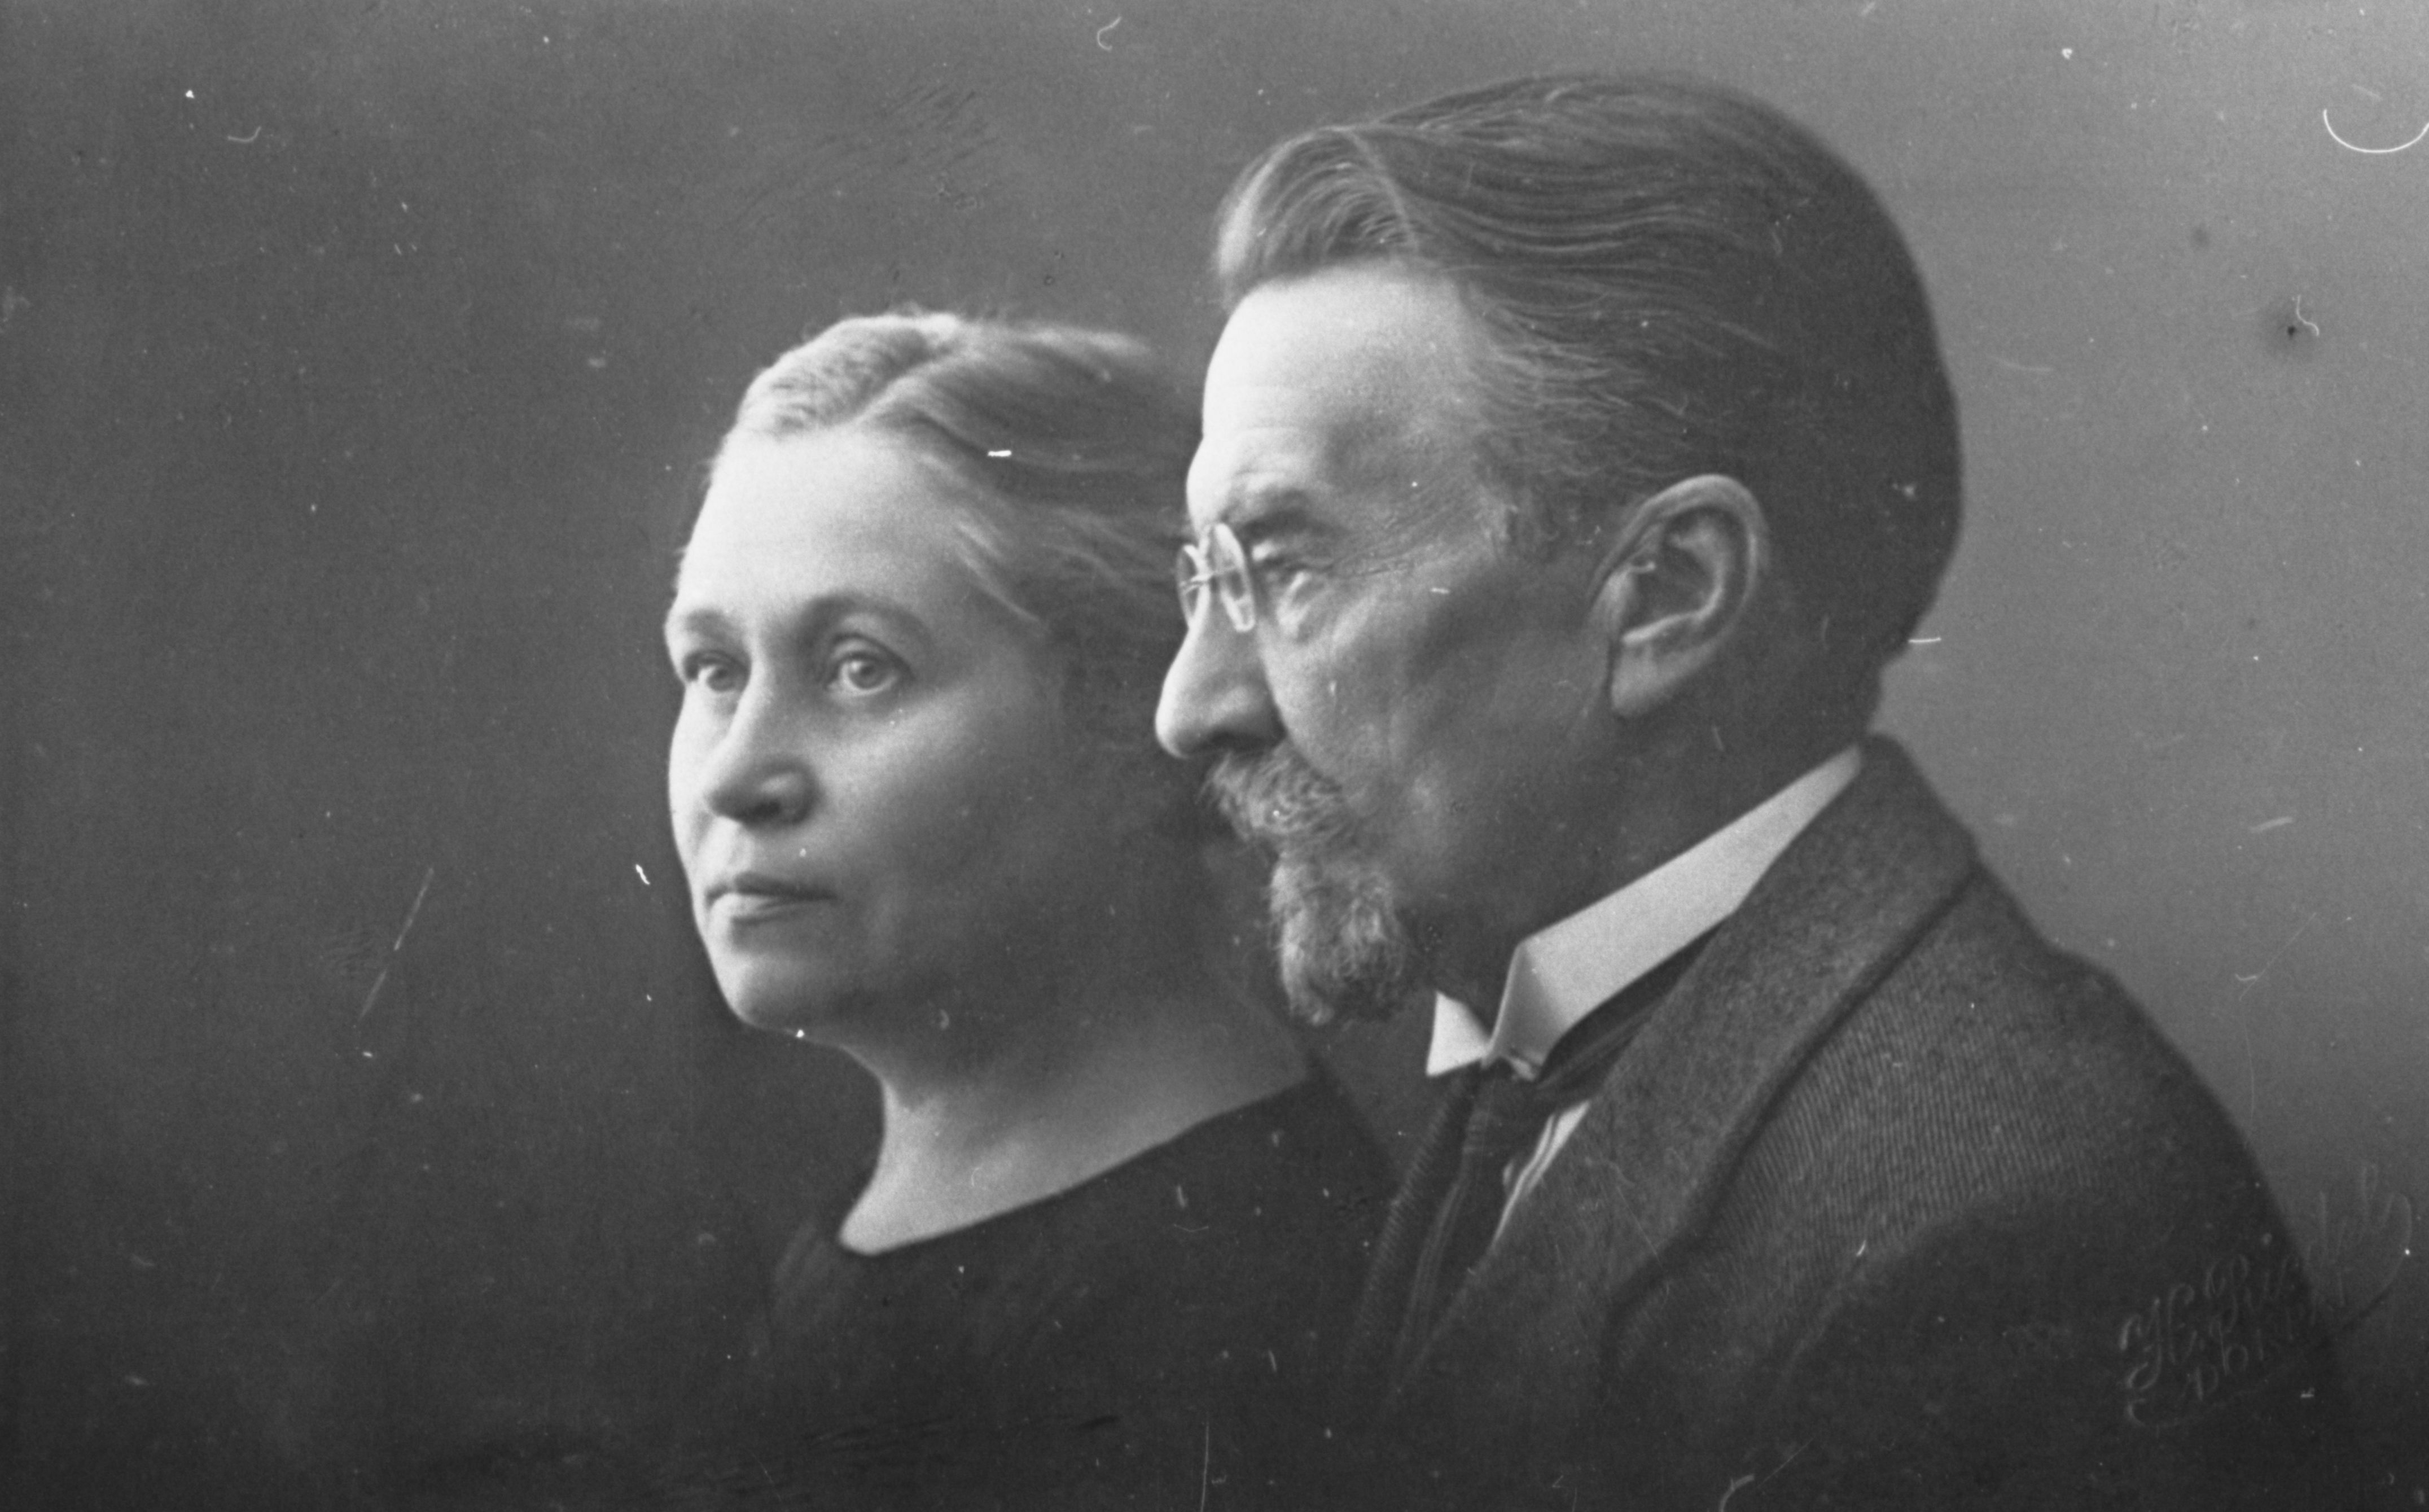 August Kitzberg's wife